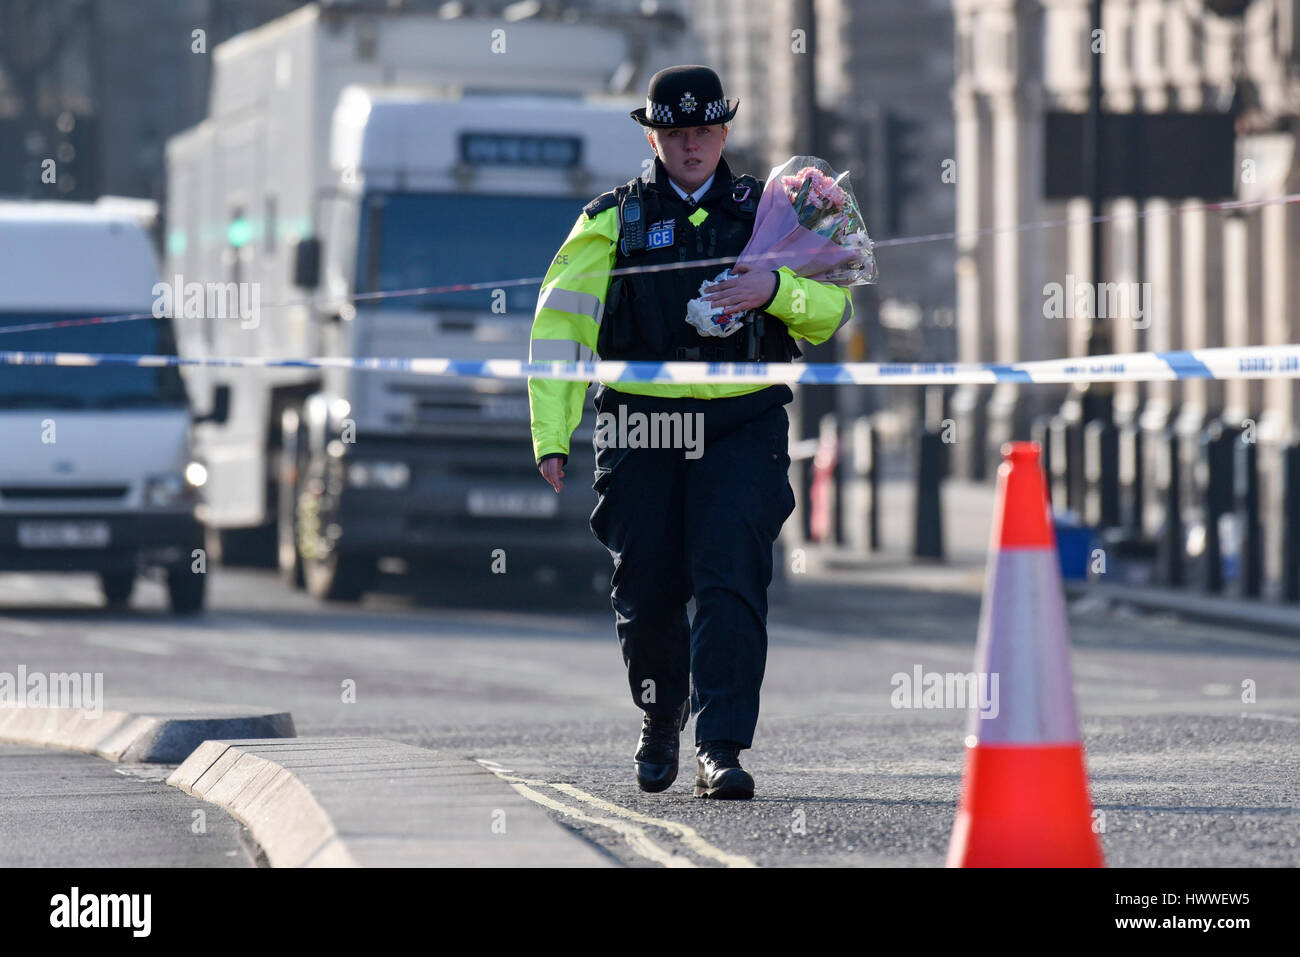 Londra, Regno Unito. Il 23 marzo 2017. Una poliziotta arriva a gettare fiori come segno di rispetto al di fuori della casa del Parlamento, seguendo ieri in attacco terroristico a Westminster. Credito: Stephen Chung / Alamy Live News Foto Stock